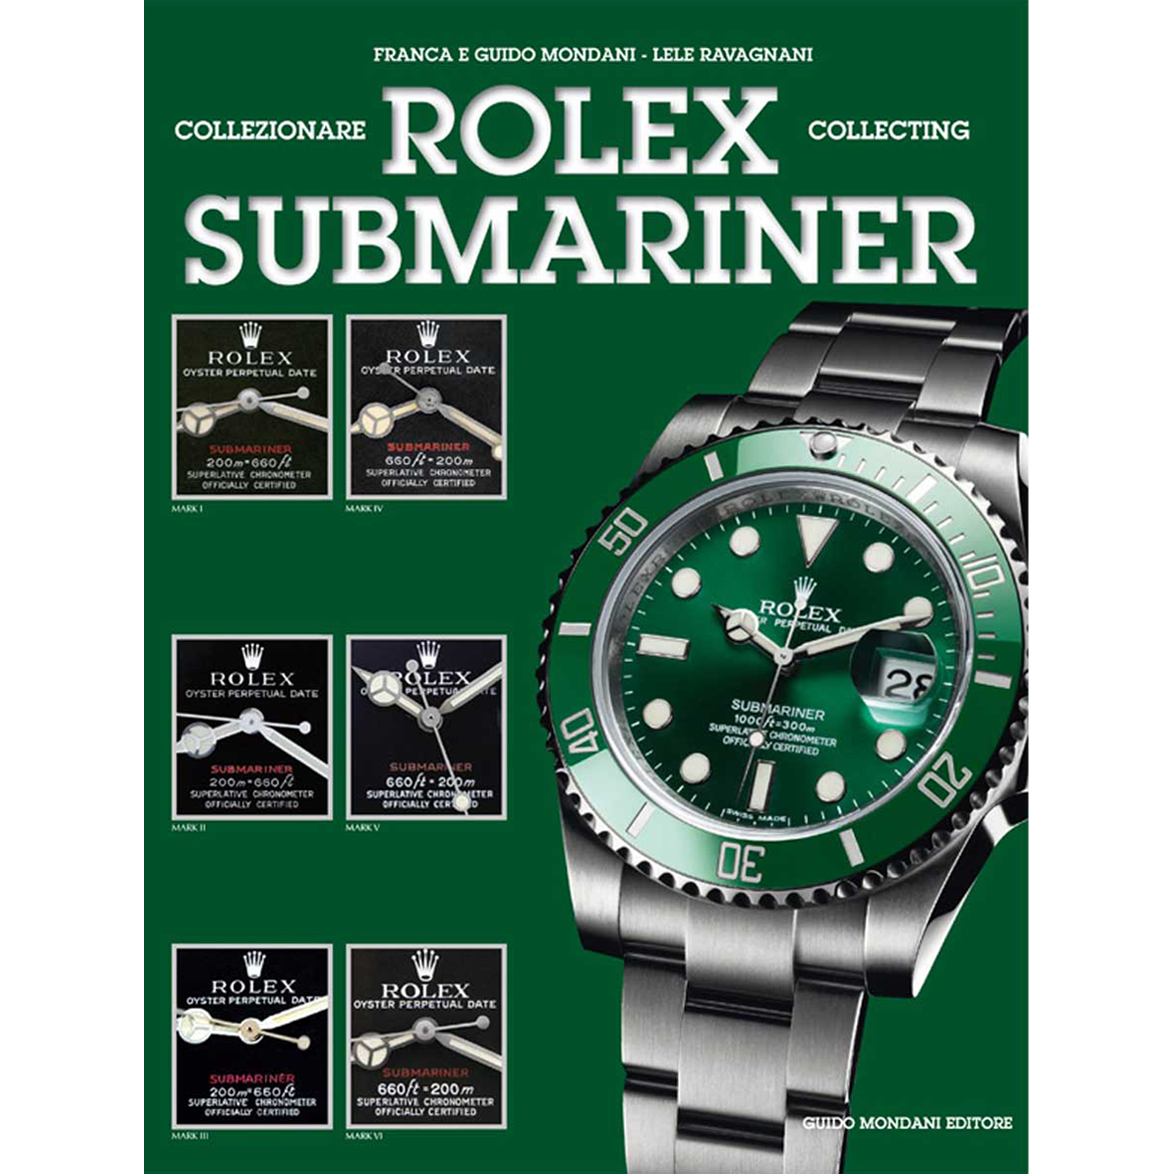 Collecting Rolex Submariner - Mondani 